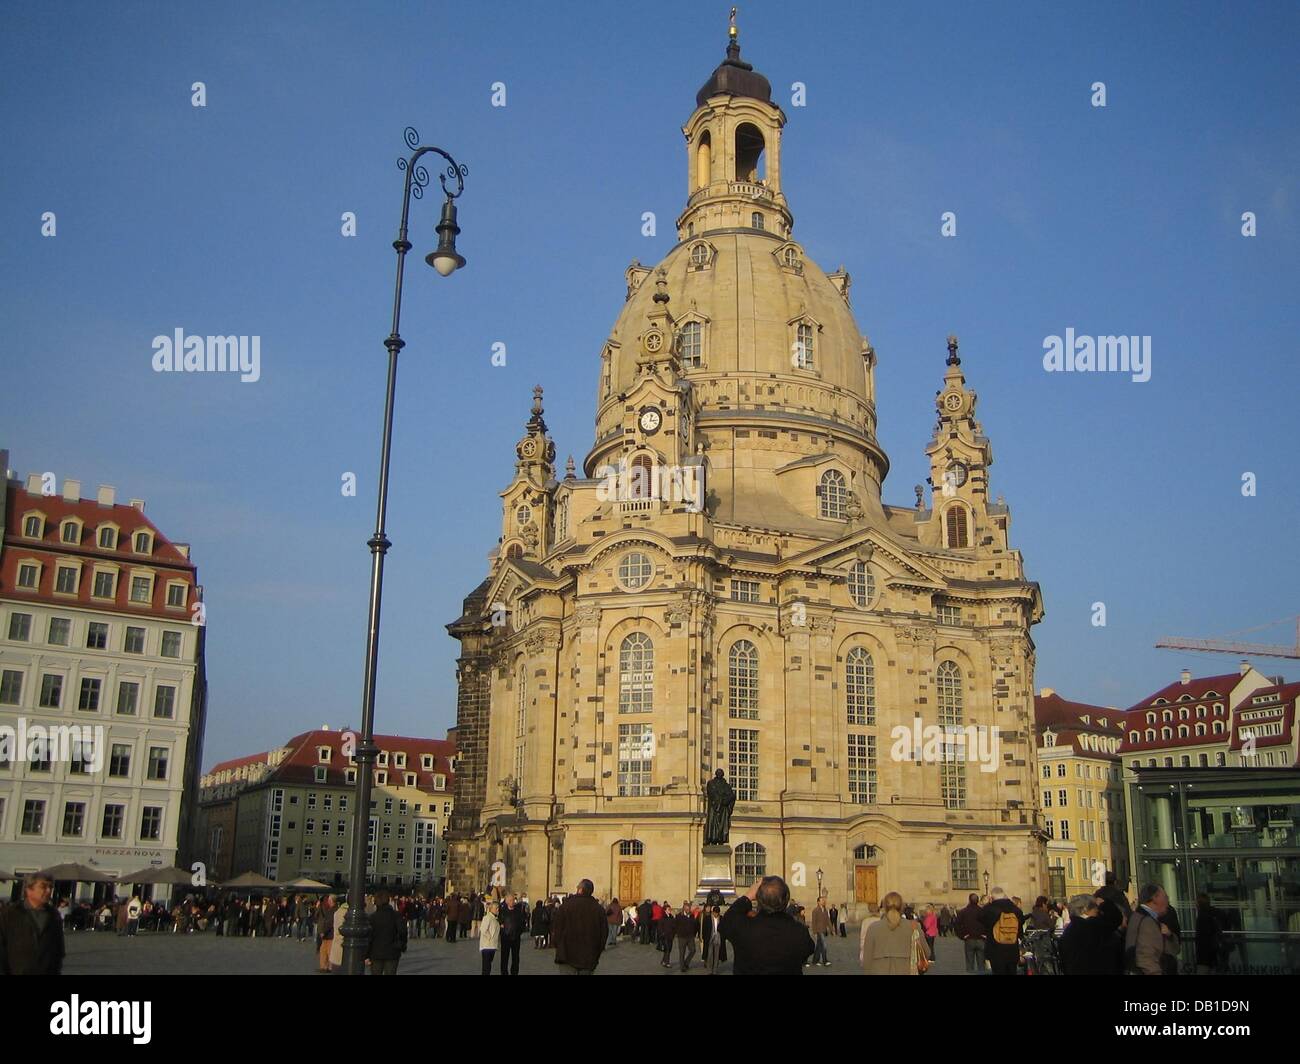 La foto mostra la Frauenkirche di Dresda protestante della Chiesa che fu distrutta durante la II Guerra Mondiale e ricostruita tra il 1994 e il 2005 con donazioni, a Dresda (Germania), 28 ottobre 2007. Foto: Beate Schleep Foto Stock